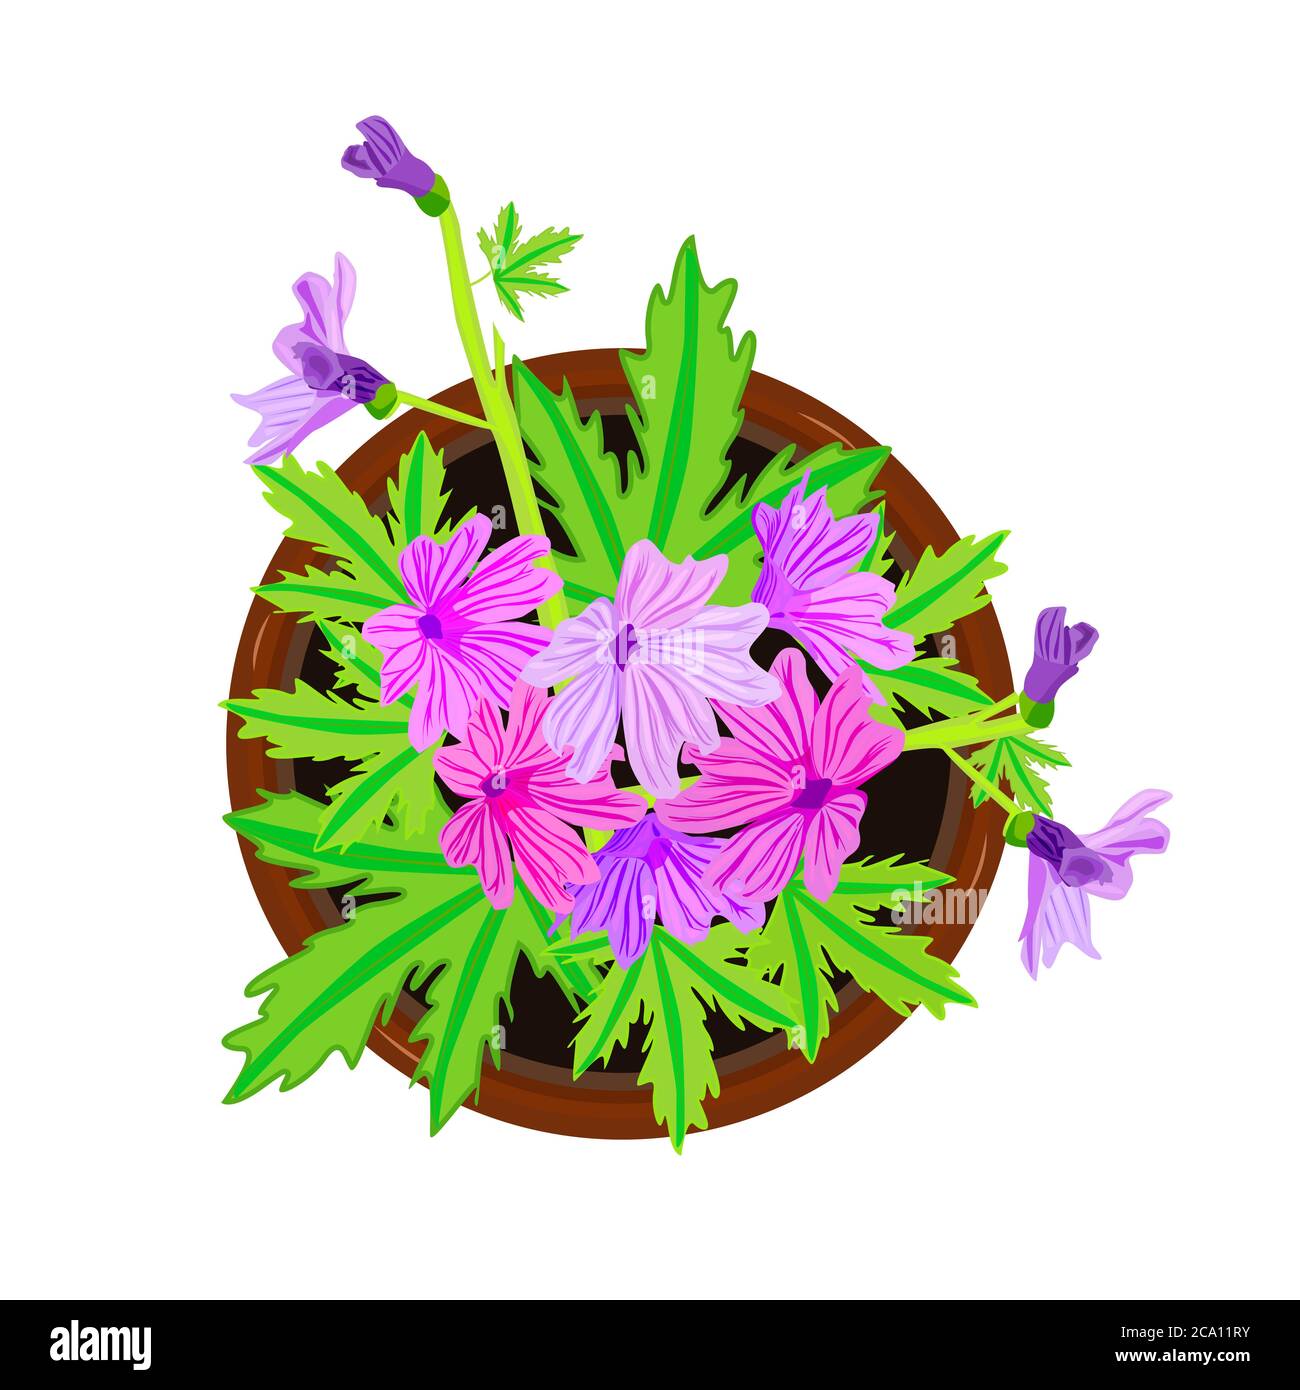 Fleur en pot isolée sur fond blanc. Fleur violette fraîche avec feuilles  vertes dans le pot de fleurs. Maison plante vue de dessus. Illustration du  vecteur de stock Image Vectorielle Stock -